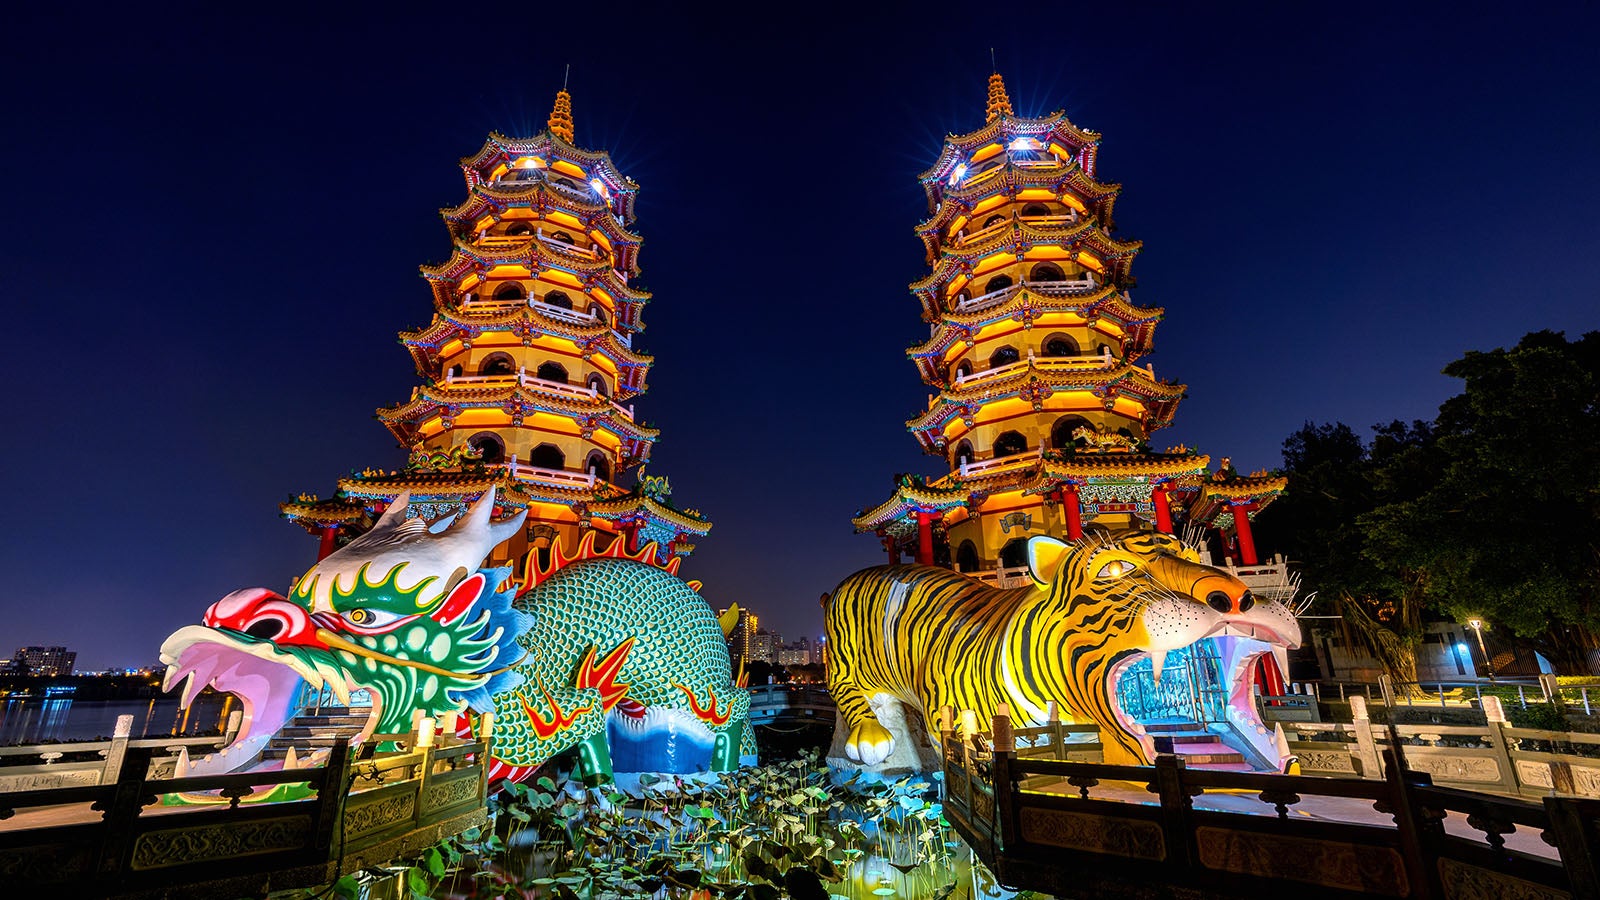 Dragon and Tiger Pagodas at night in Kaohsiung, Taiwan